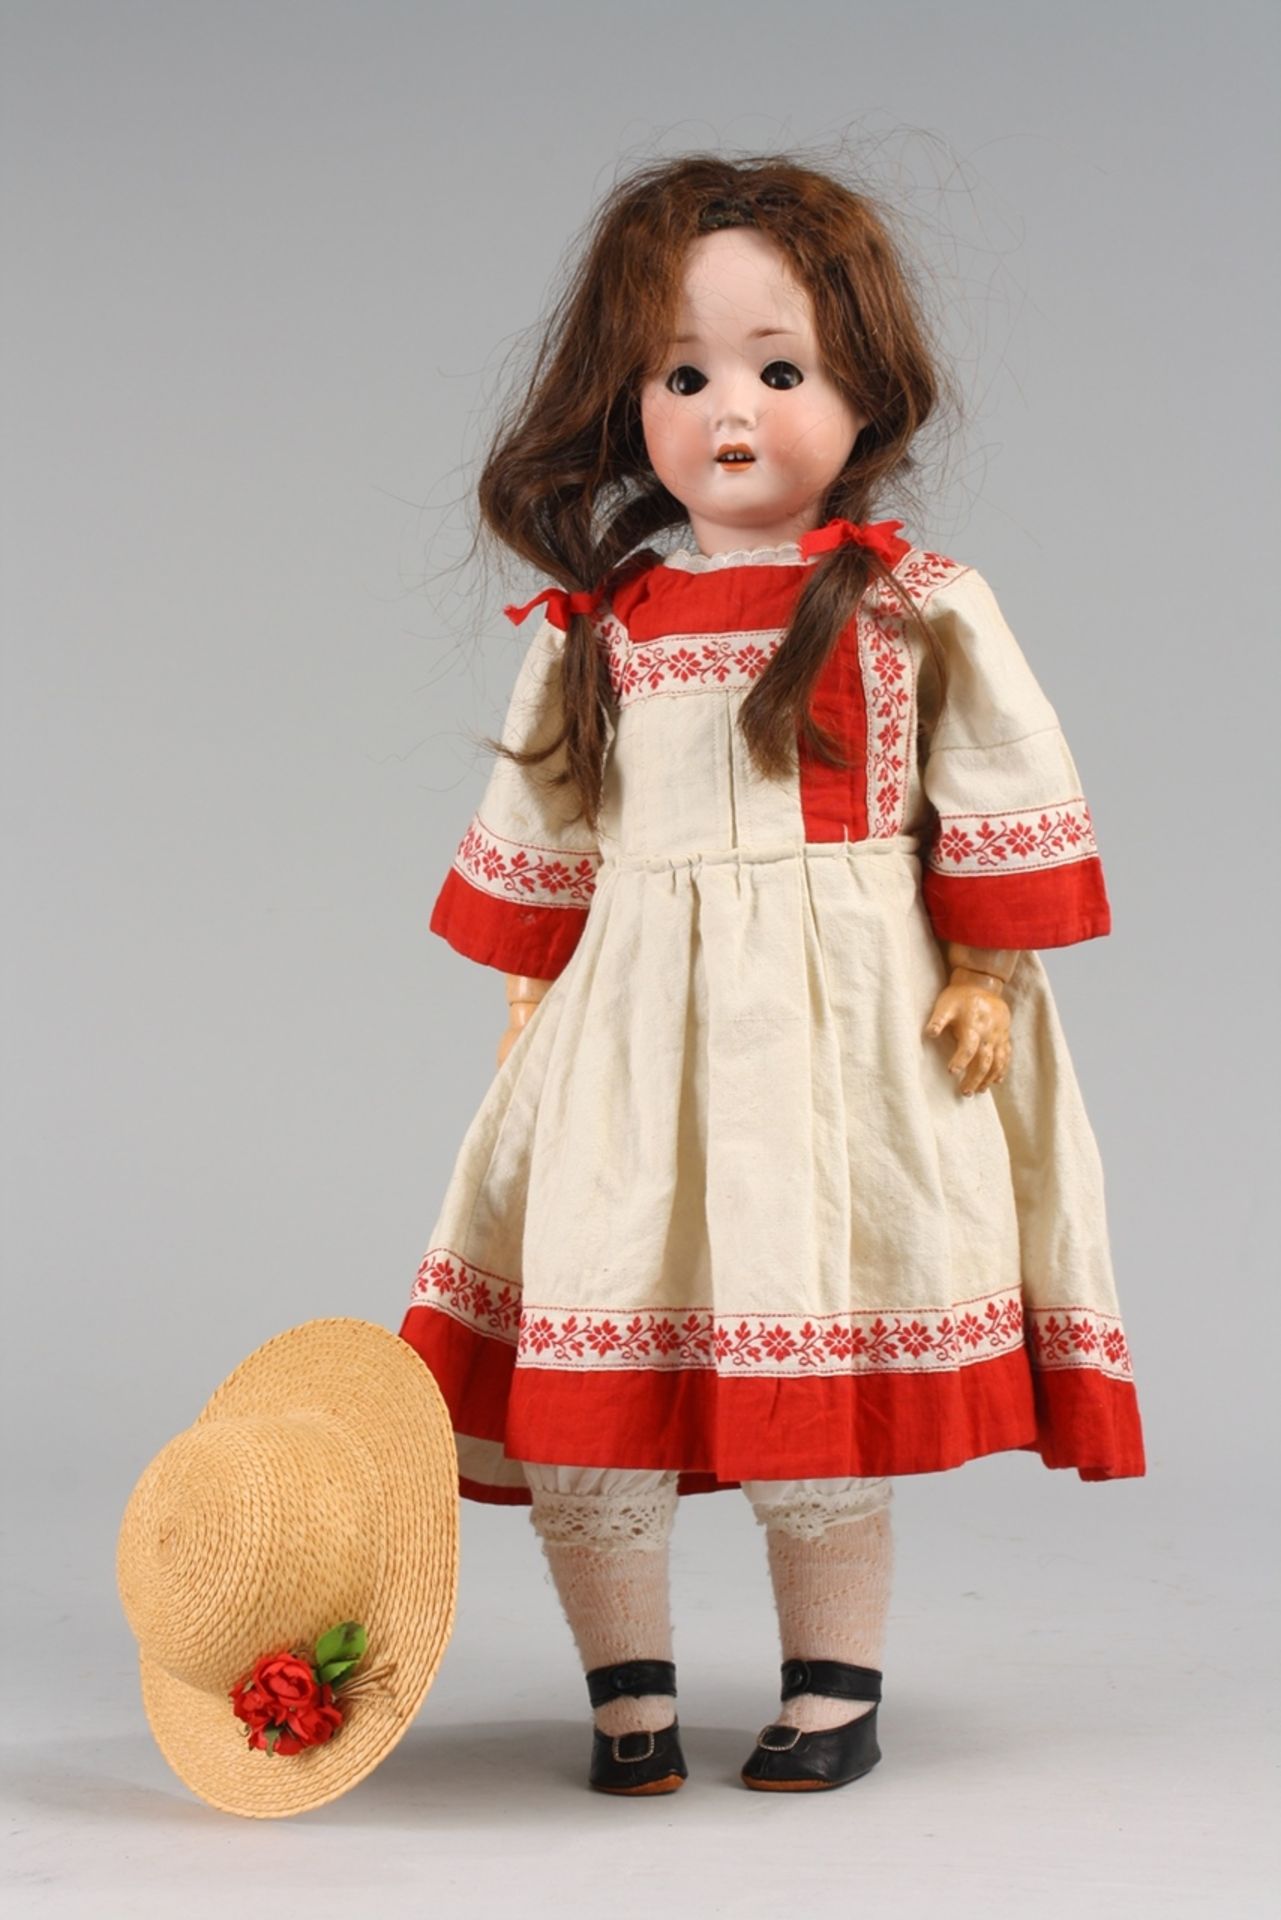 Historisches Porzellankopf-Puppenmädchen - Bild 3 aus 7